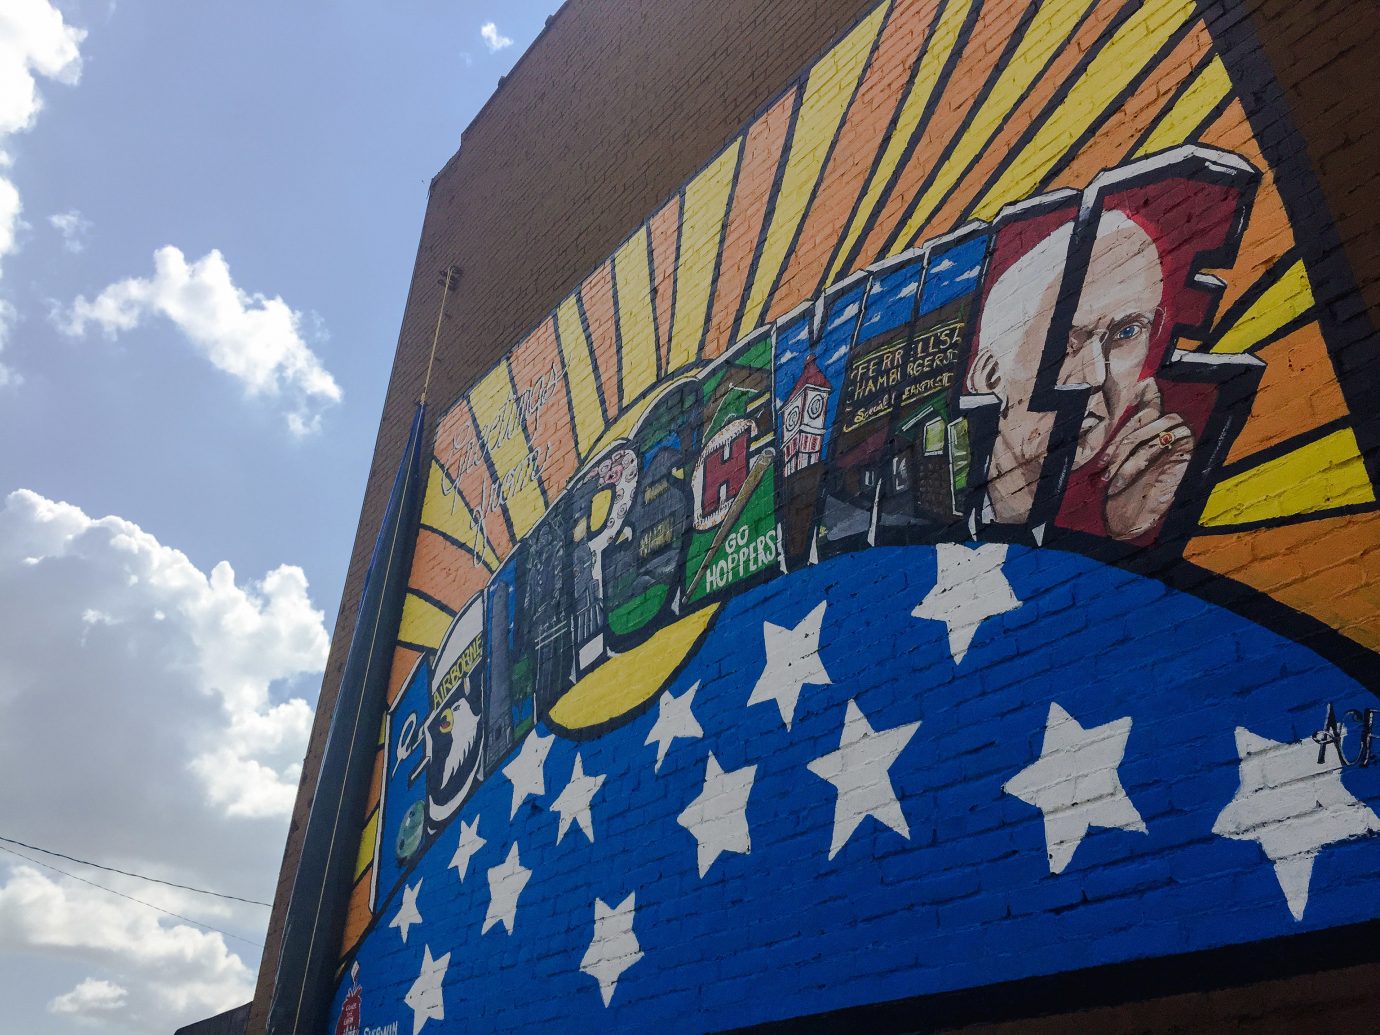 Offbeat sky blue outdoor flag wall mural daytime street art graffiti painted